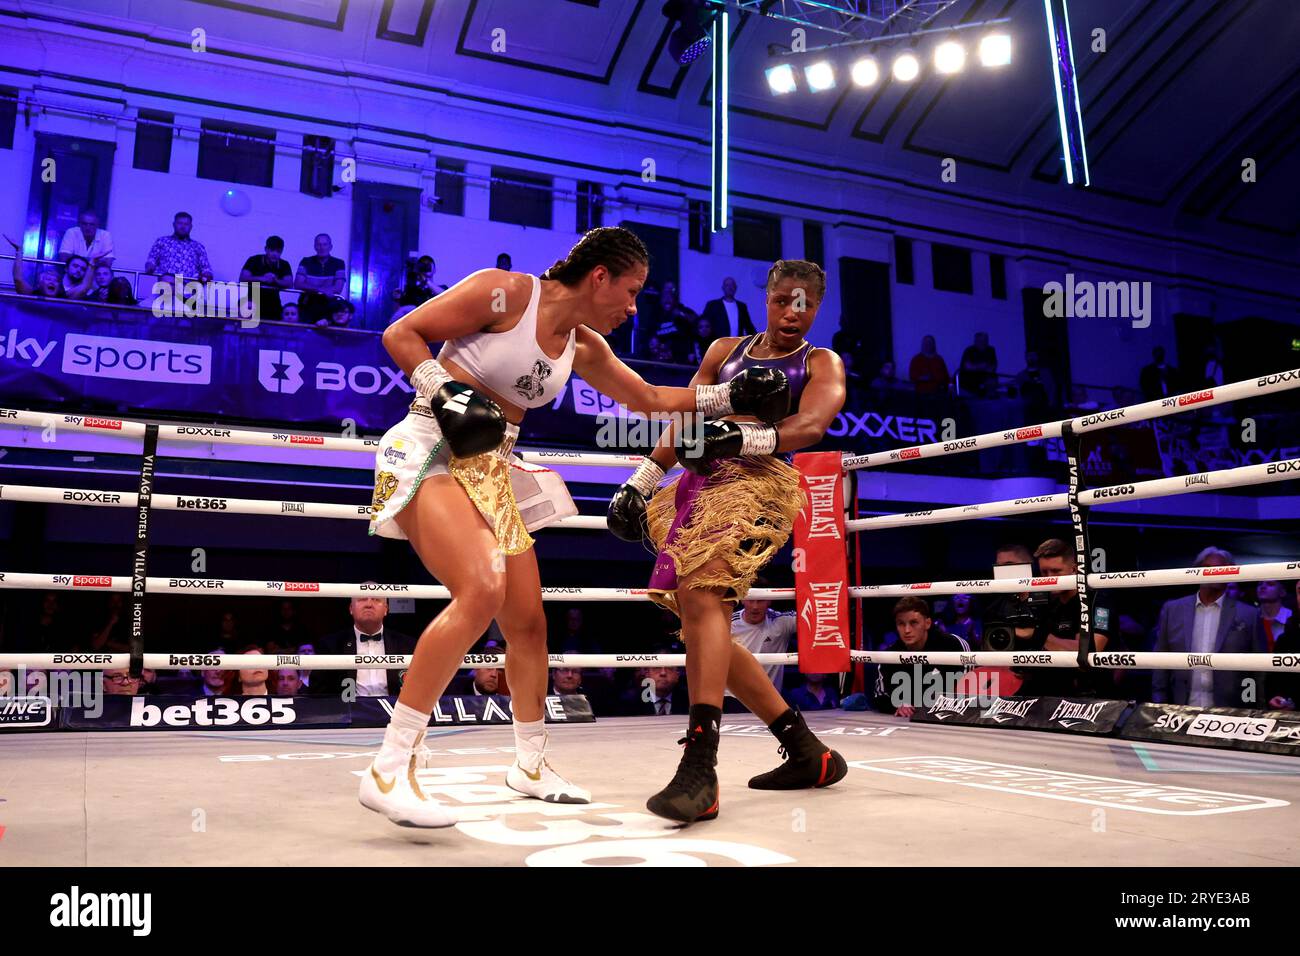 Caroline Dubois (rechts) und Magali Rodriguez in Aktion während des IBO Lightweight Title Fight in York Hall, London. Bilddatum: Samstag, 30. September 2023. Stockfoto